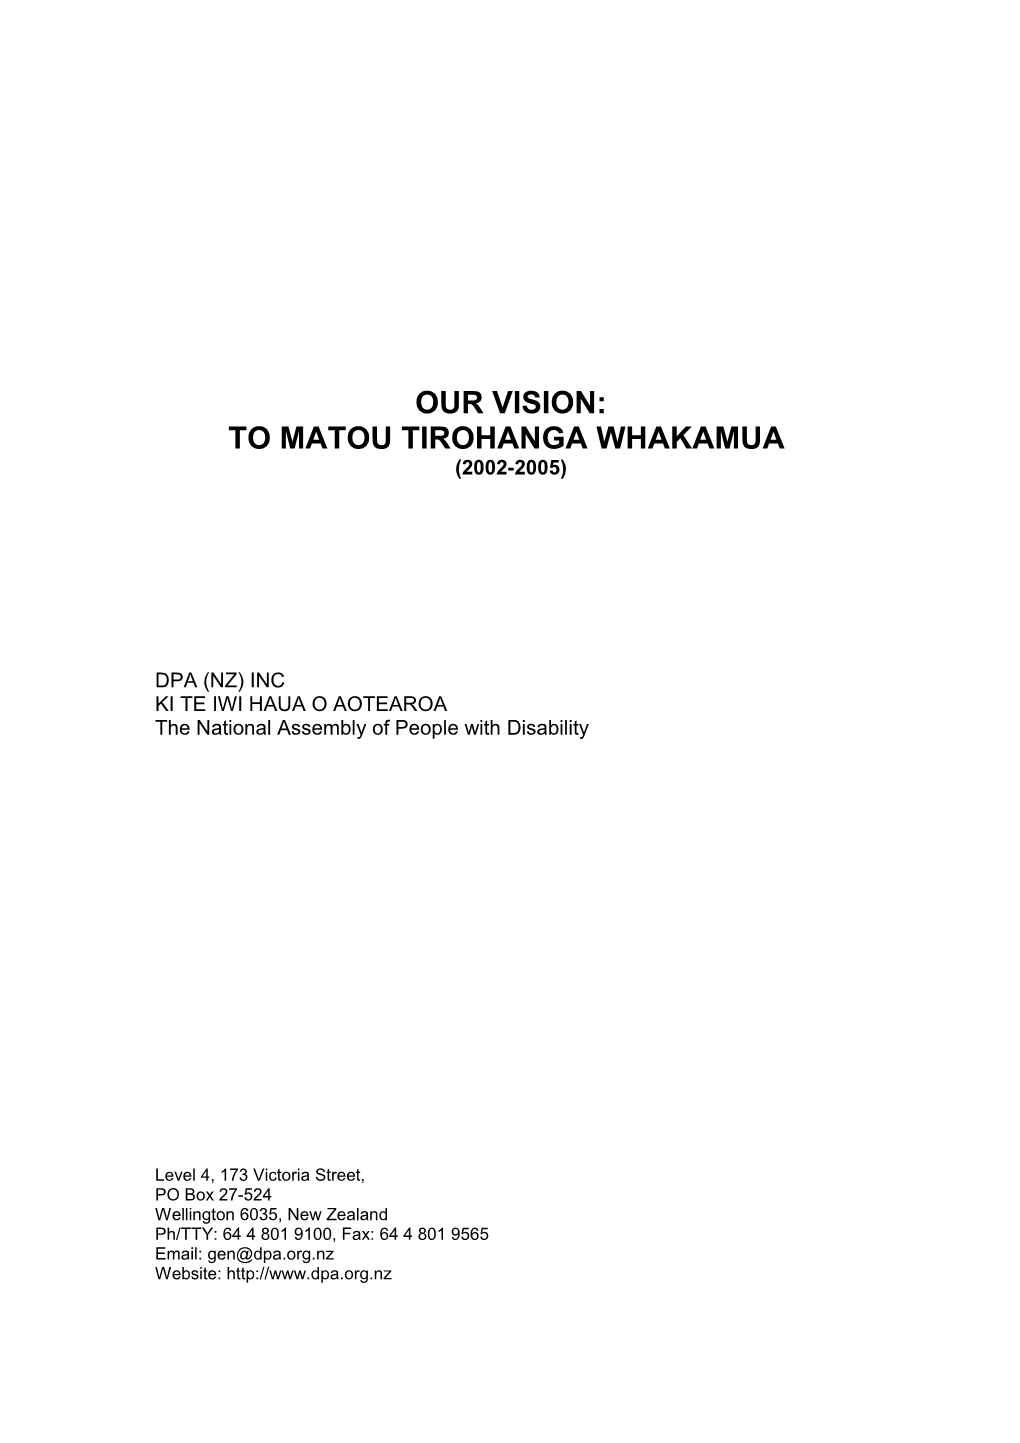 To Matou Tirohanga Whakamua